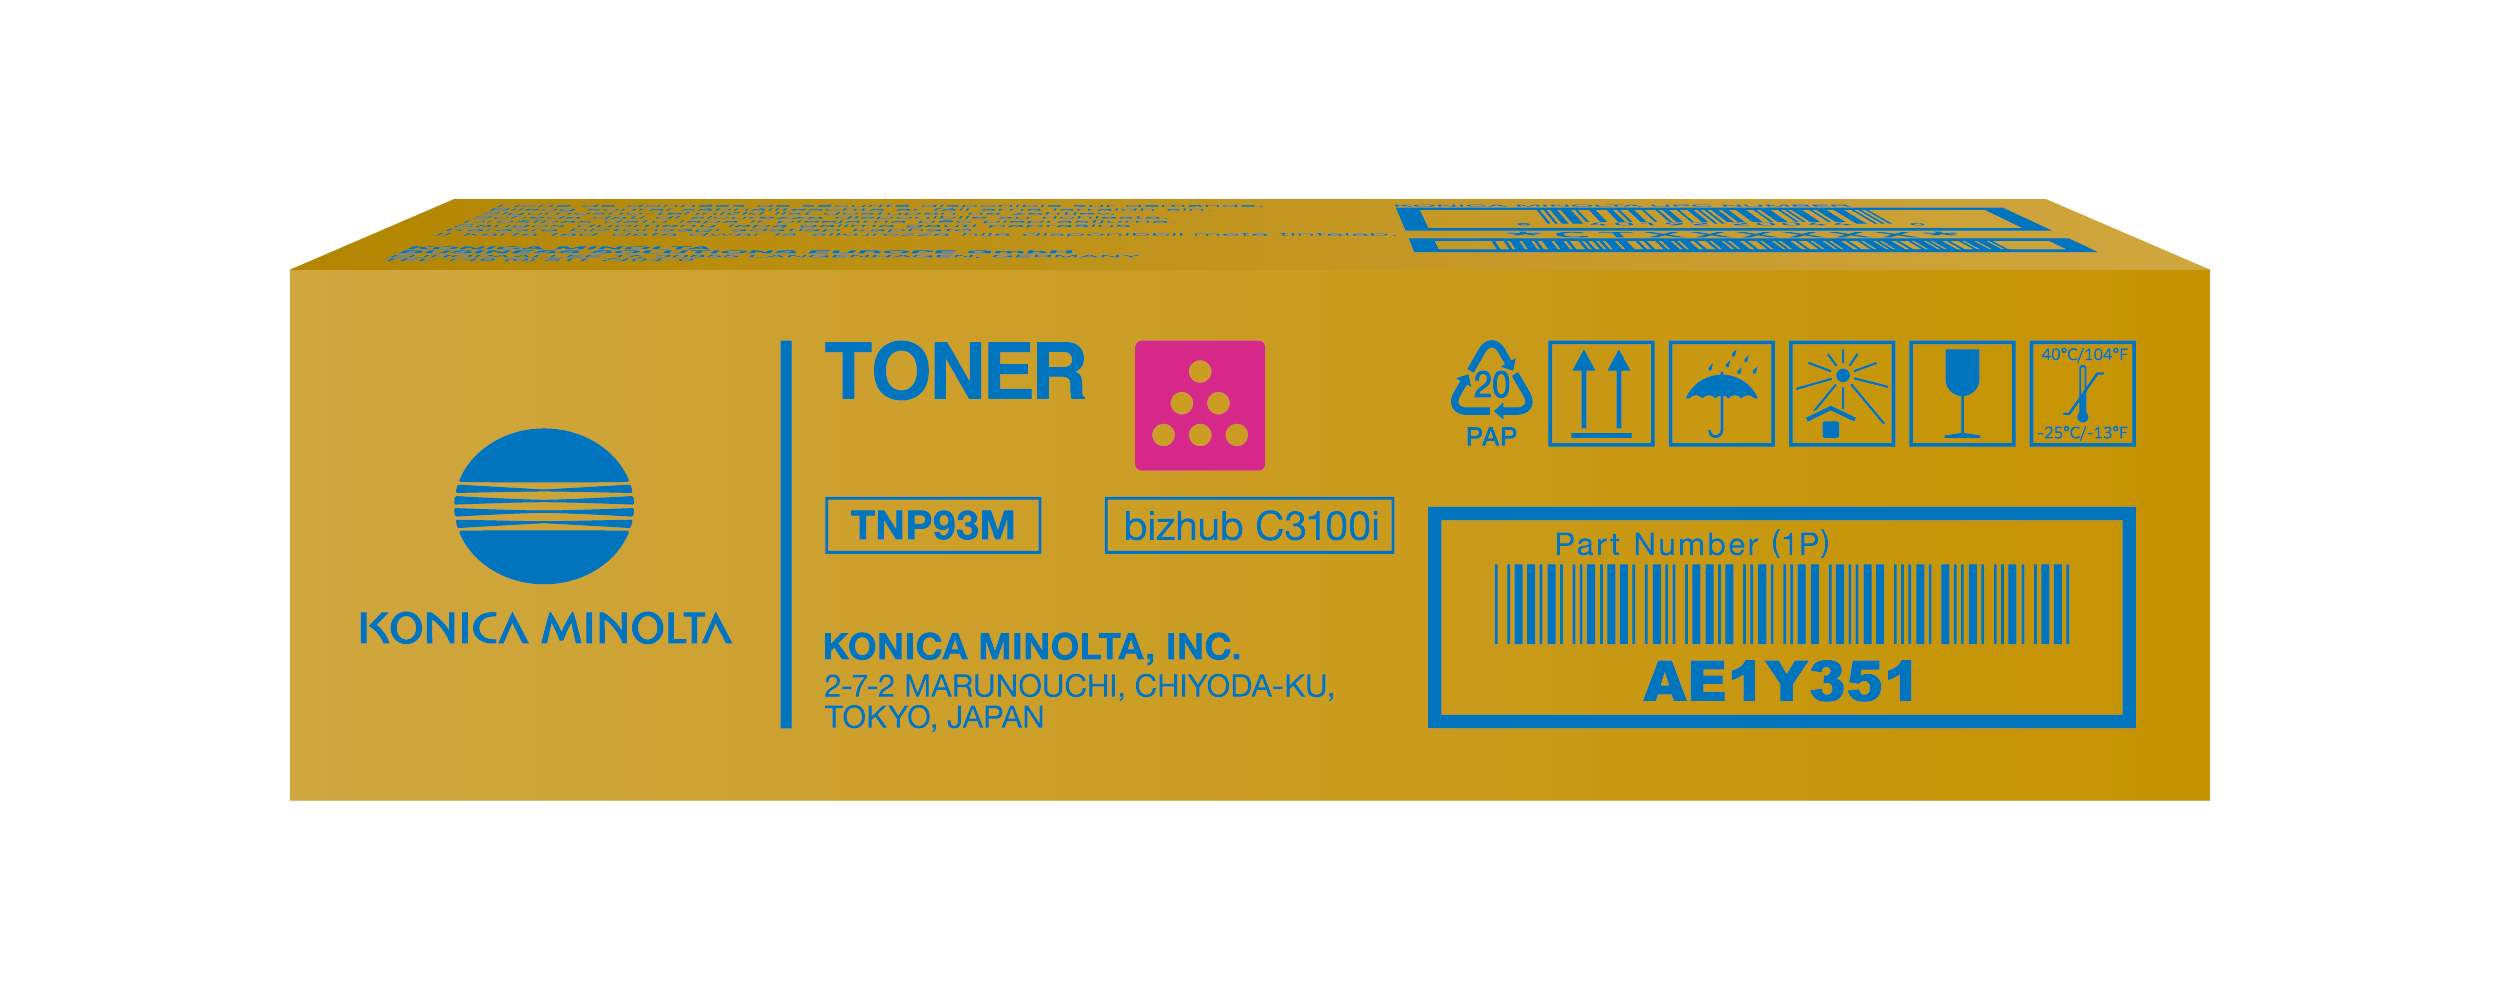 Toner Magenta for bizhub C3100i - TNP93M